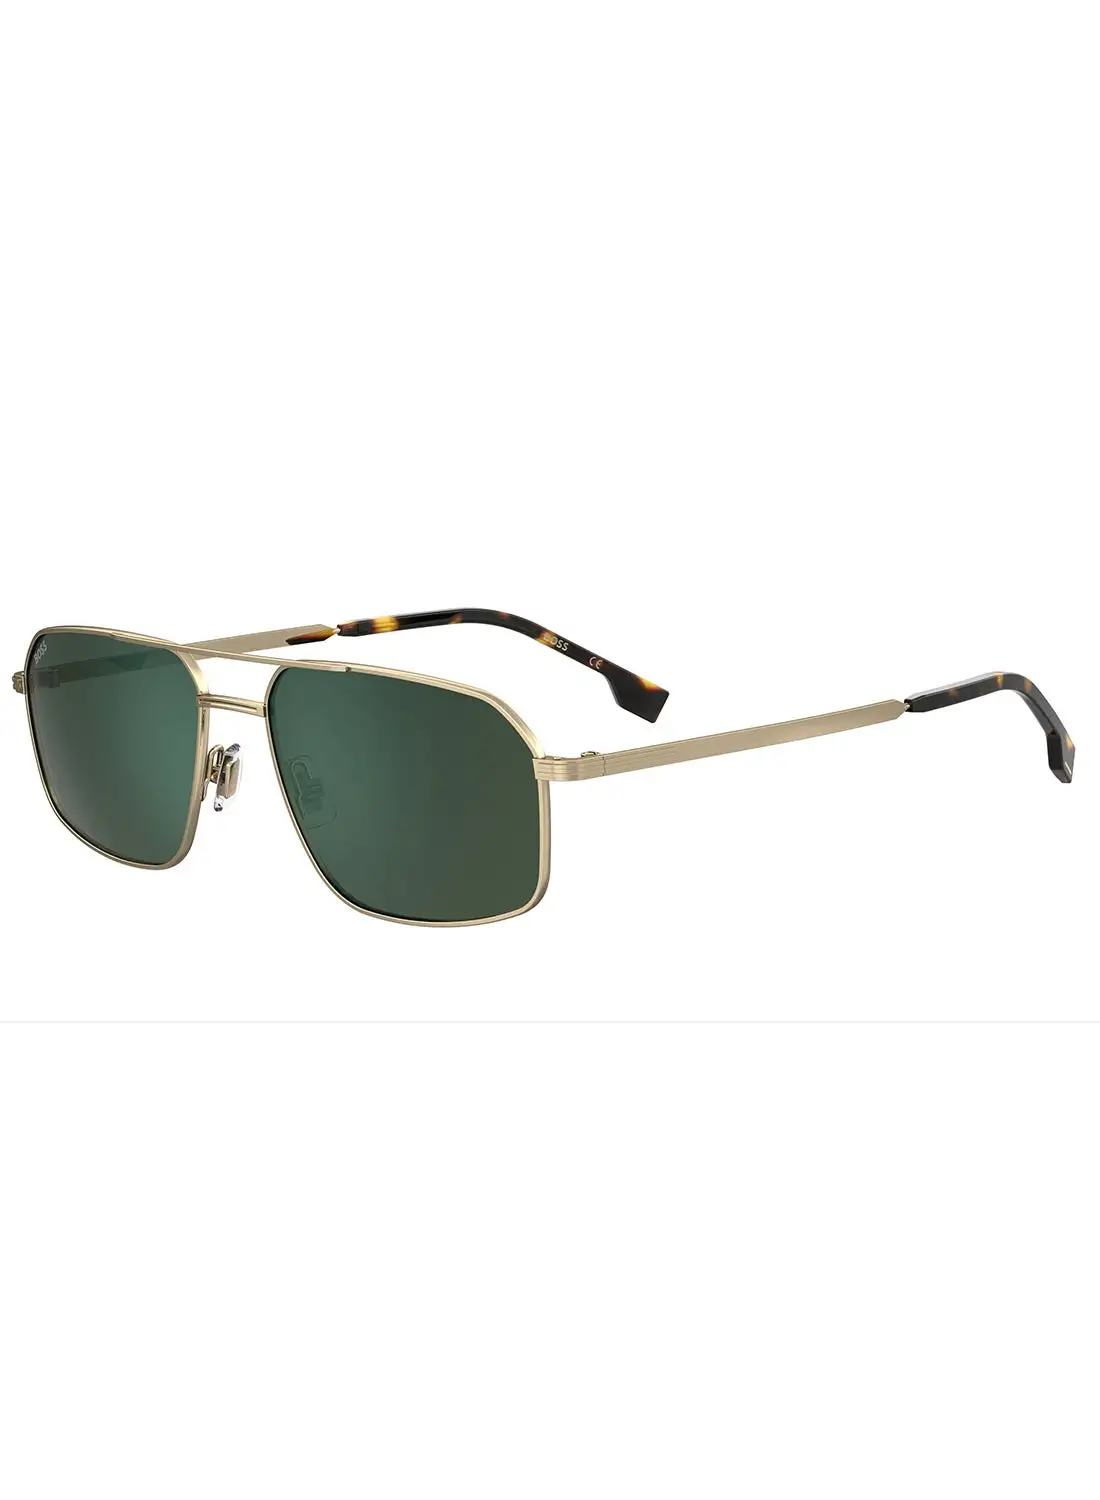 HUGO BOSS Men's UV Protection Navigator Sunglasses - Boss 1603/S Gold Millimeter - Lens Size: 58 Mm